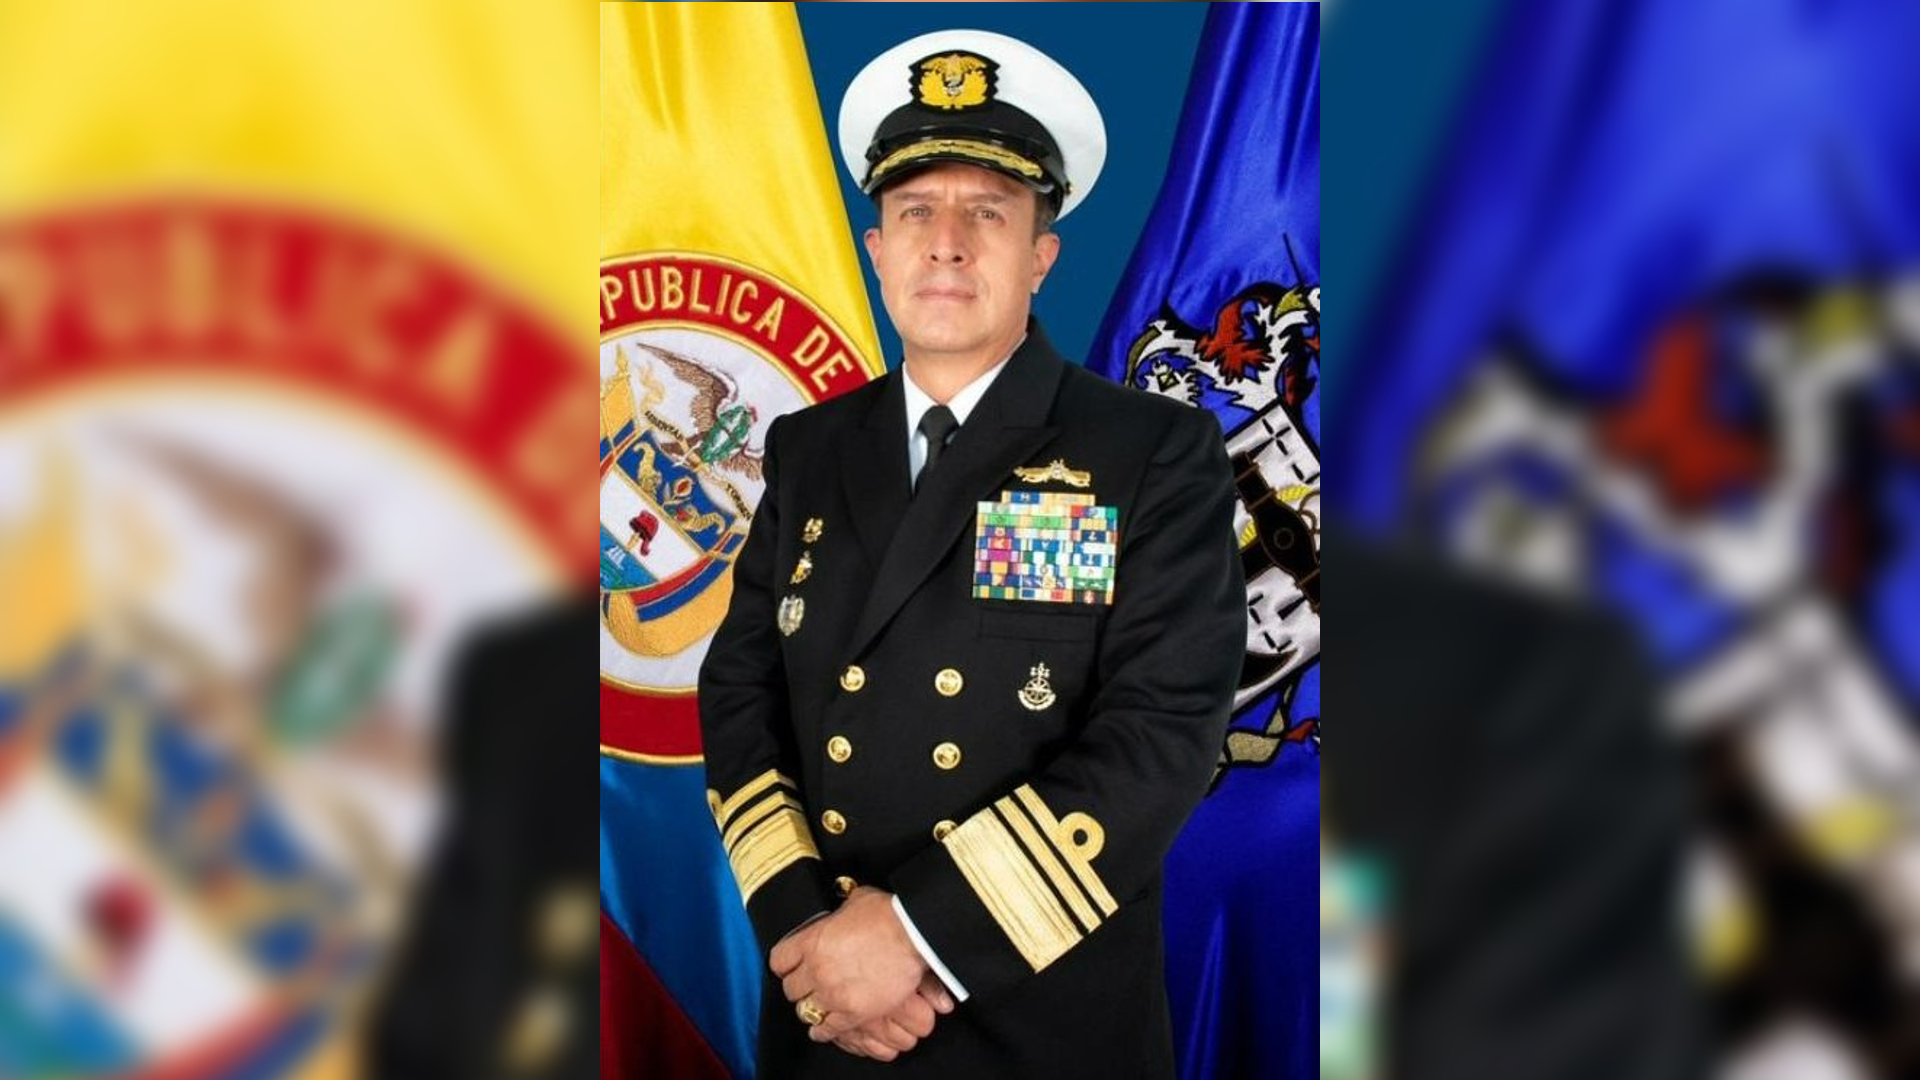 El comandante de la Armada le respondió a Iván Duque sobre supuesto interés de Venezuela en información militar confidencial: “Se requiere de esta comunicación”